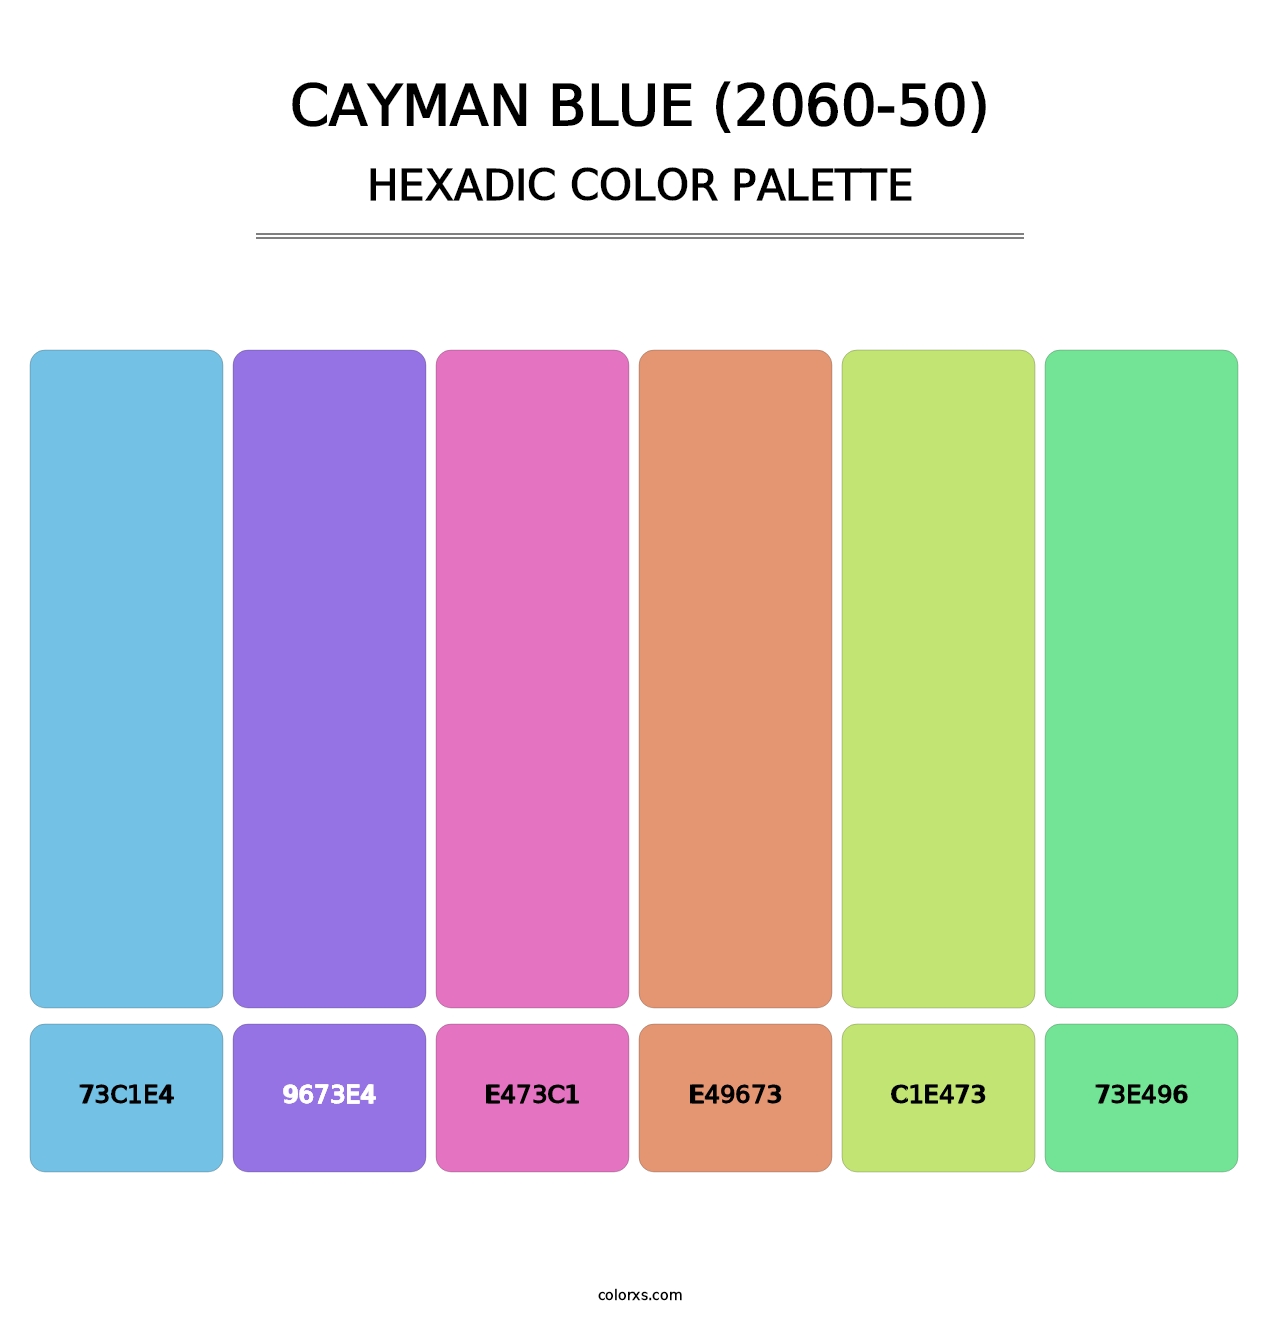 Cayman Blue (2060-50) - Hexadic Color Palette